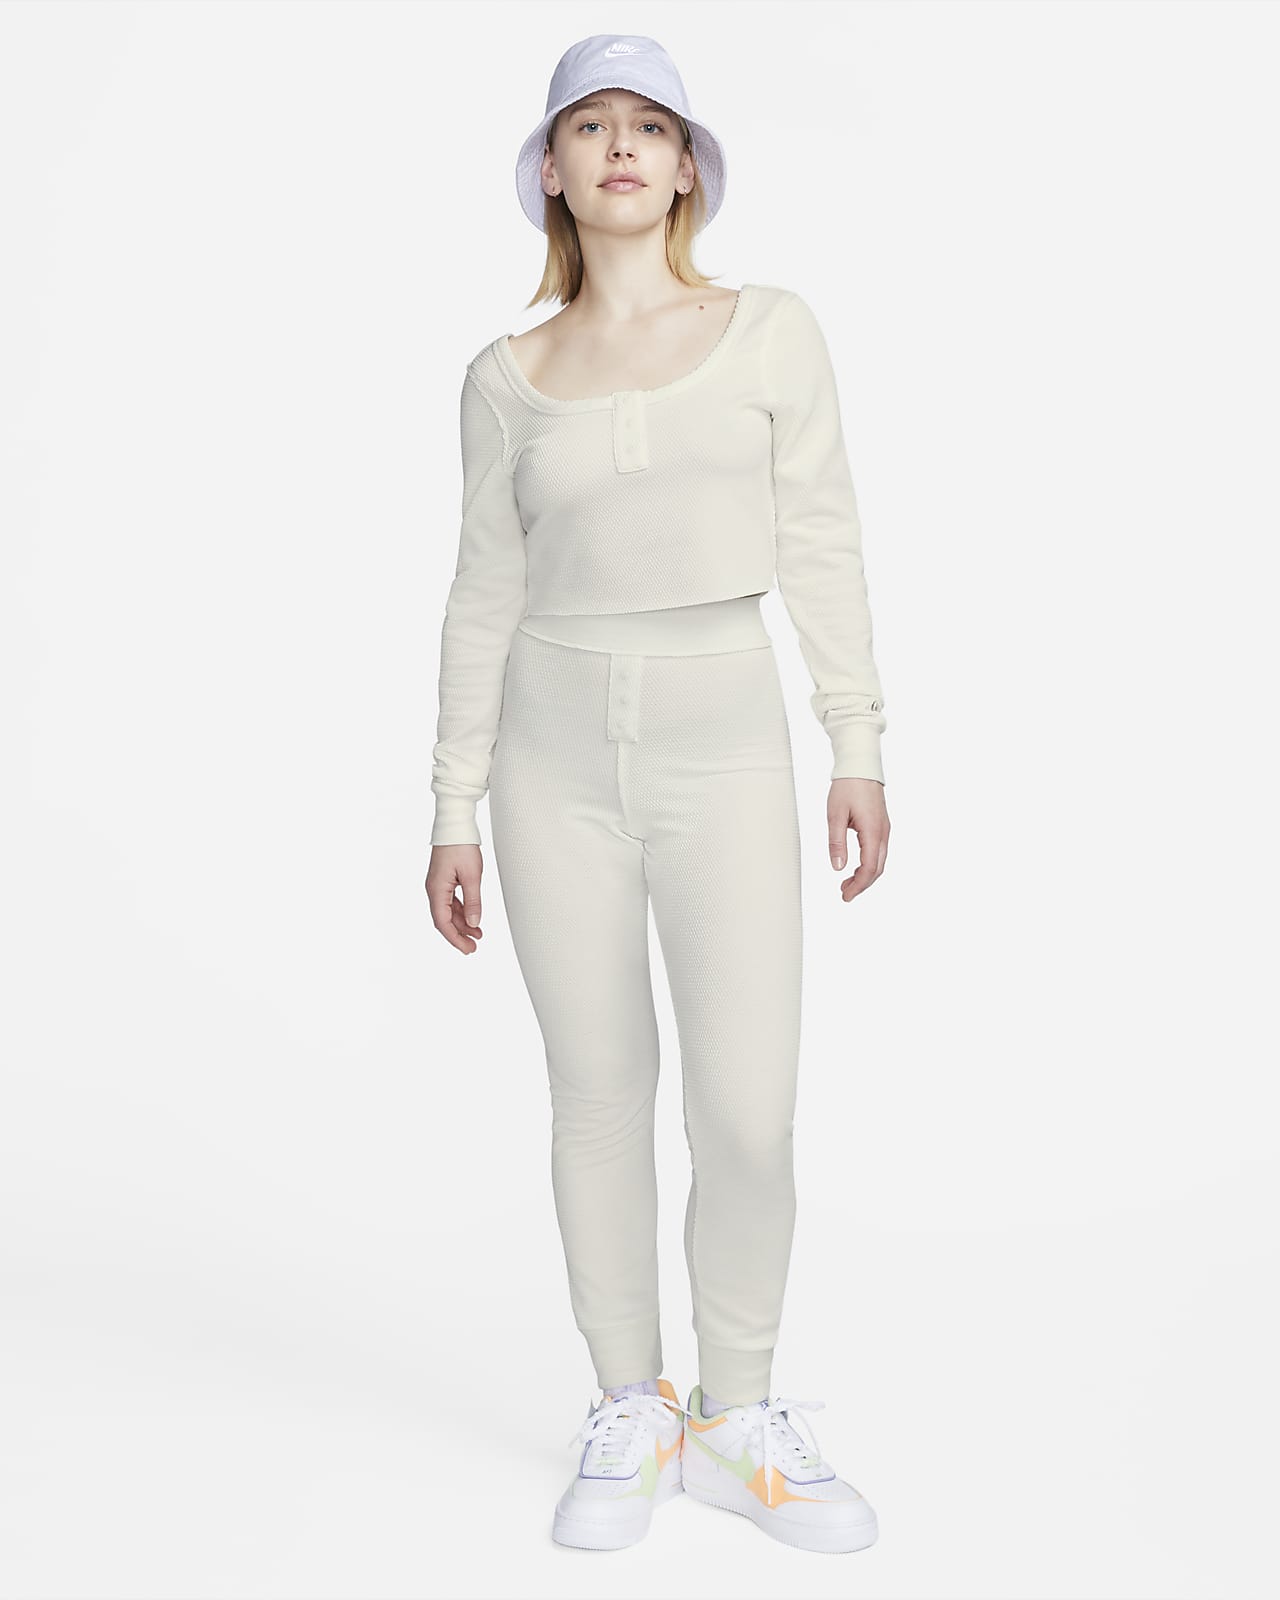 Nike Sportswear Everyday Modern Women's Long-Sleeve Crop Top.